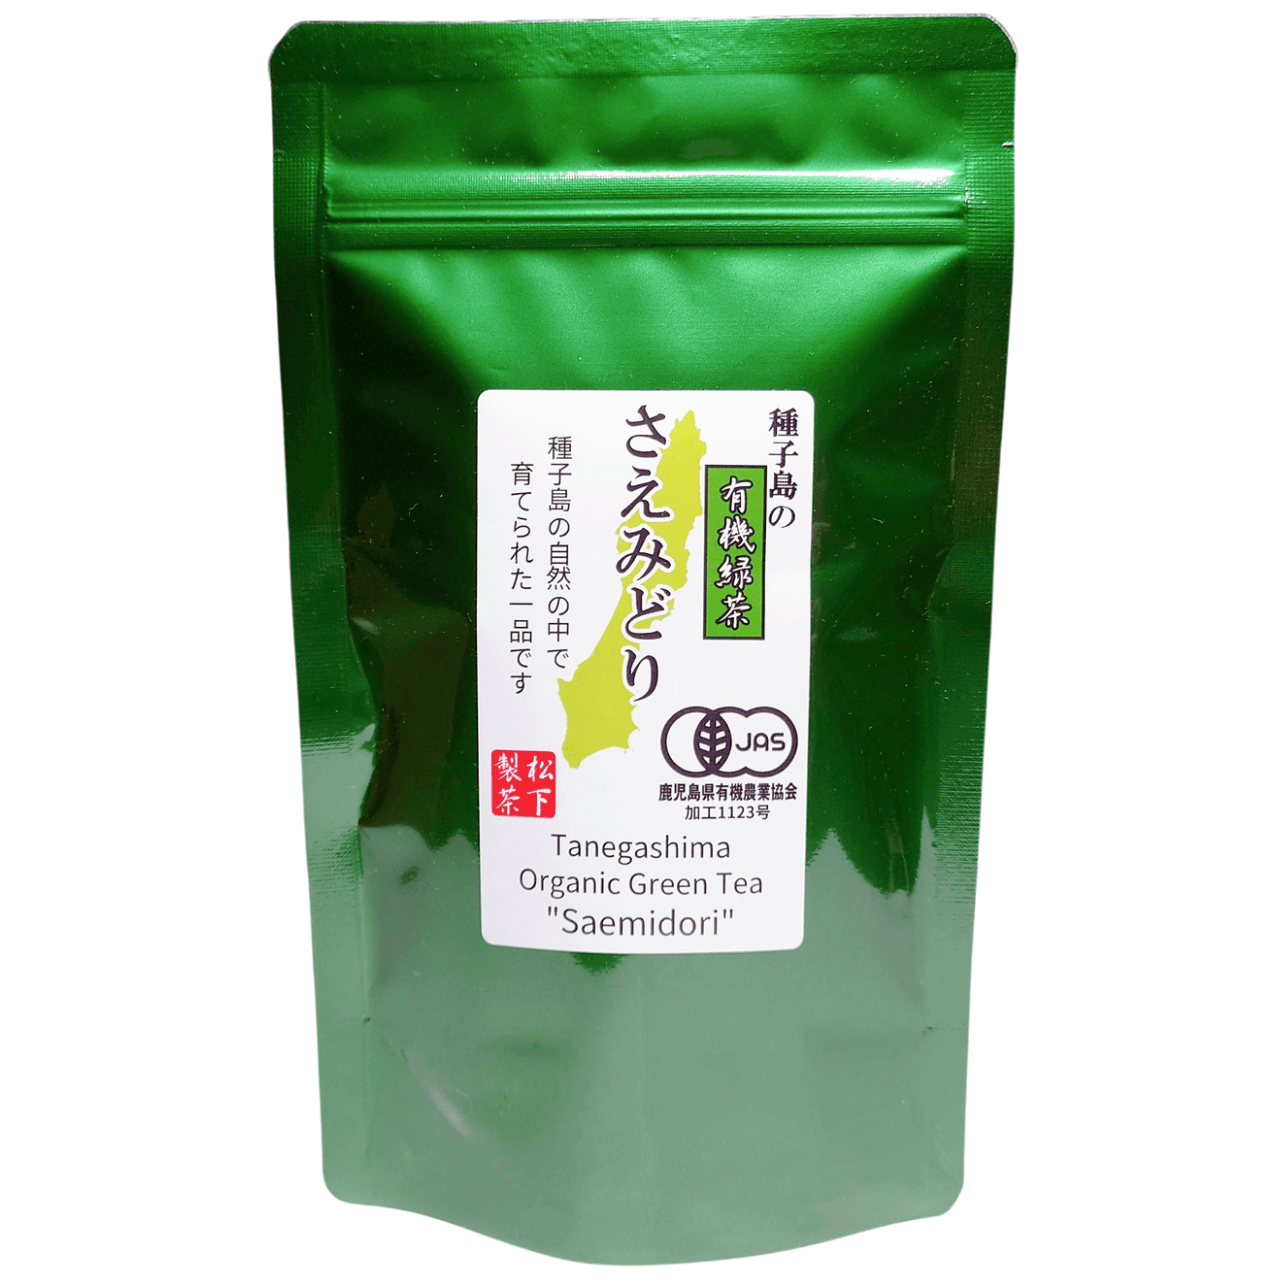 【2022年産】種子島の有機緑茶『さえみどり』 茶葉(リーフ) 100g-0